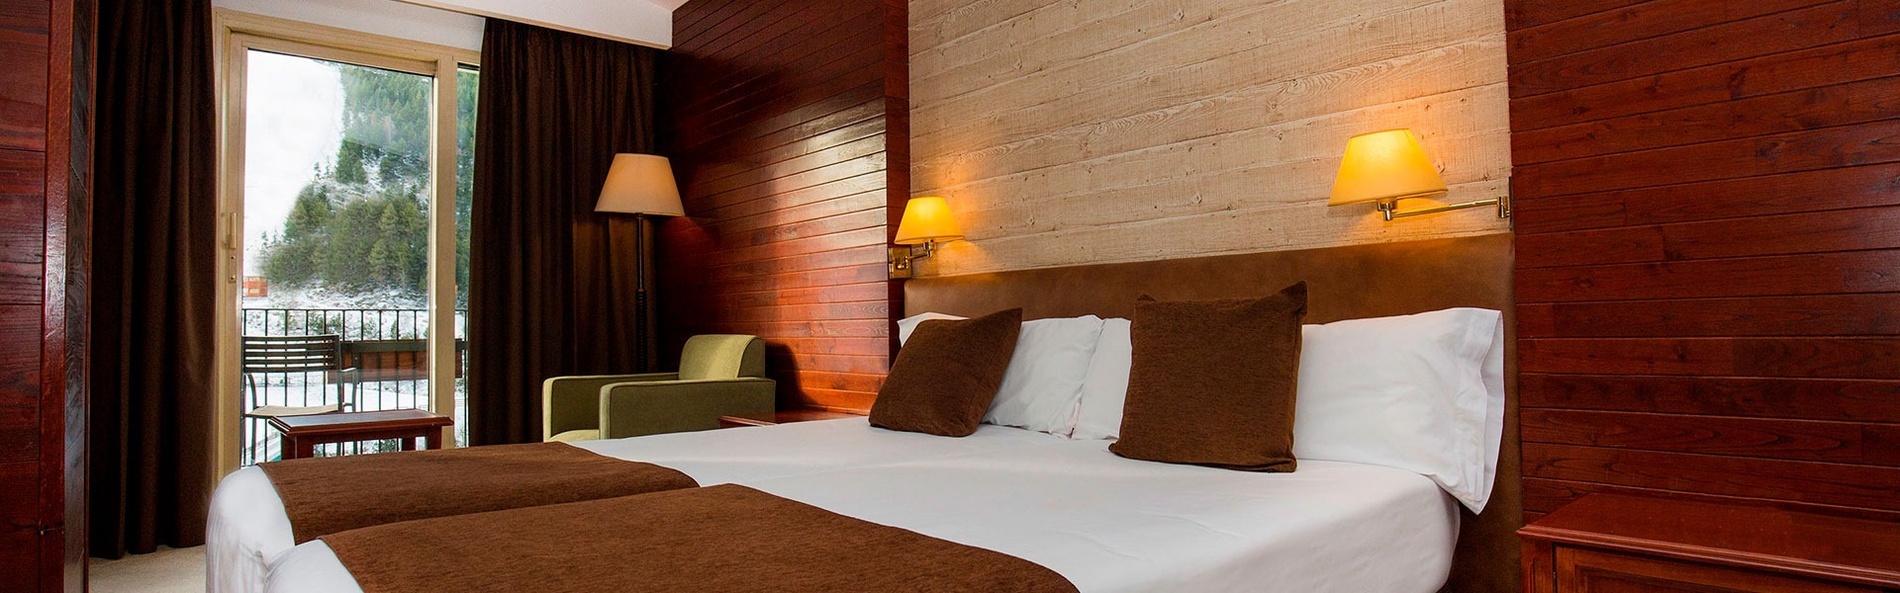 una habitació d' hotel amb una cama i un sofà